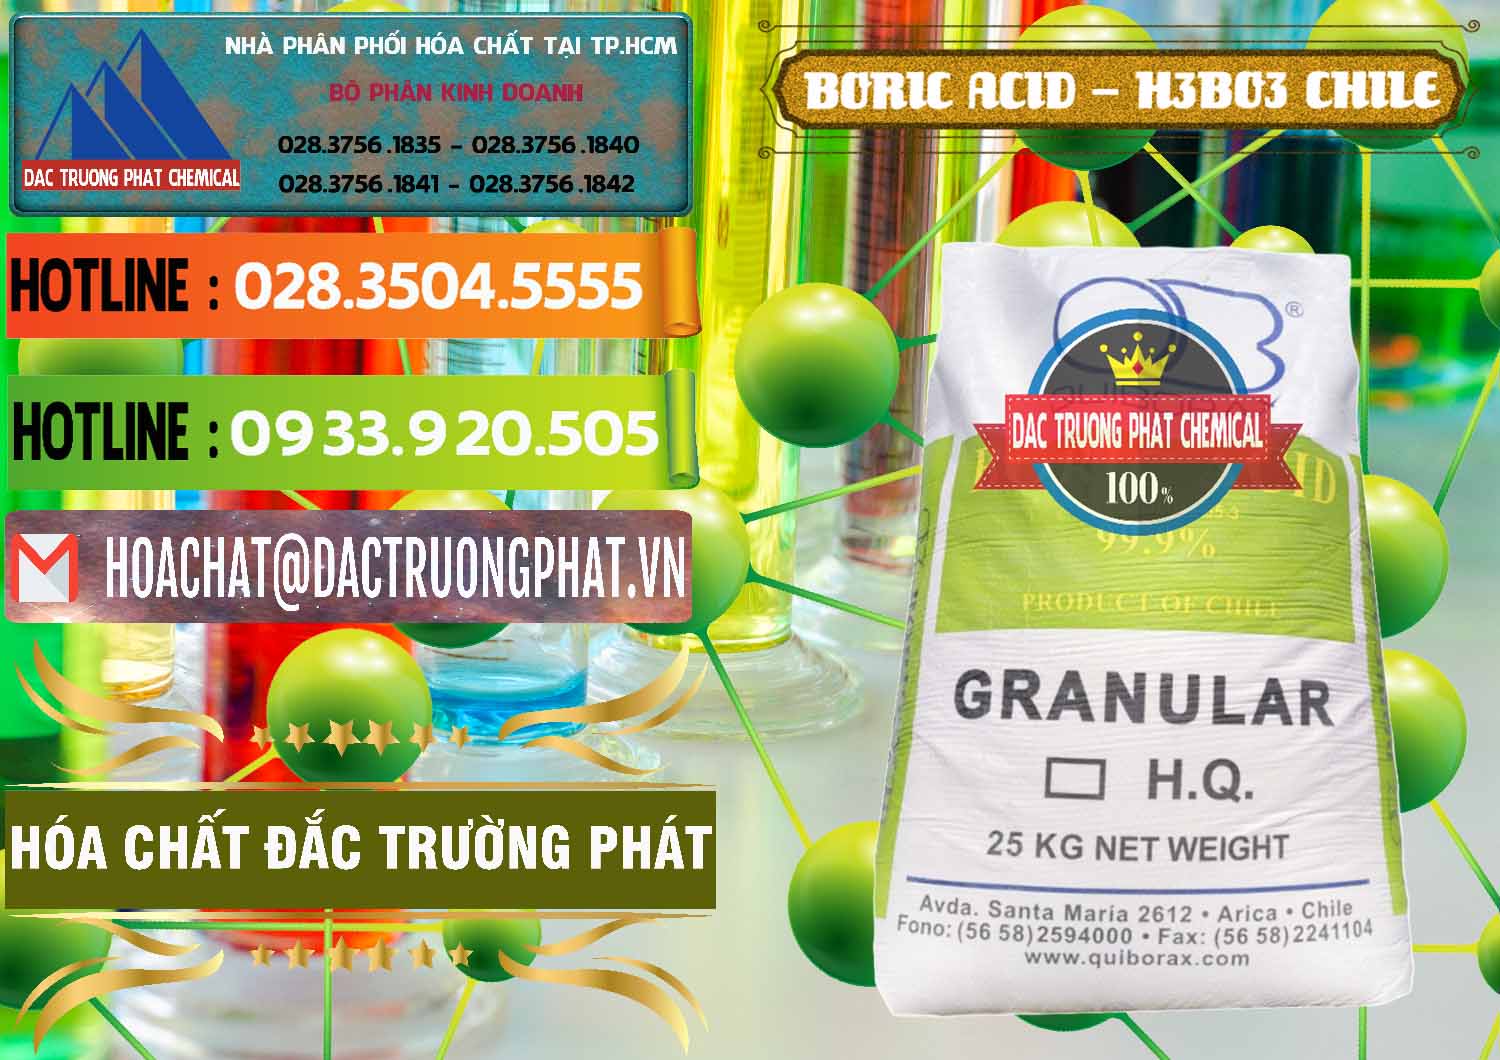 Nơi bán _ phân phối Acid Boric – Axit Boric H3BO3 99% Quiborax Chile - 0281 - Chuyên phân phối ( nhập khẩu ) hóa chất tại TP.HCM - cungcaphoachat.com.vn